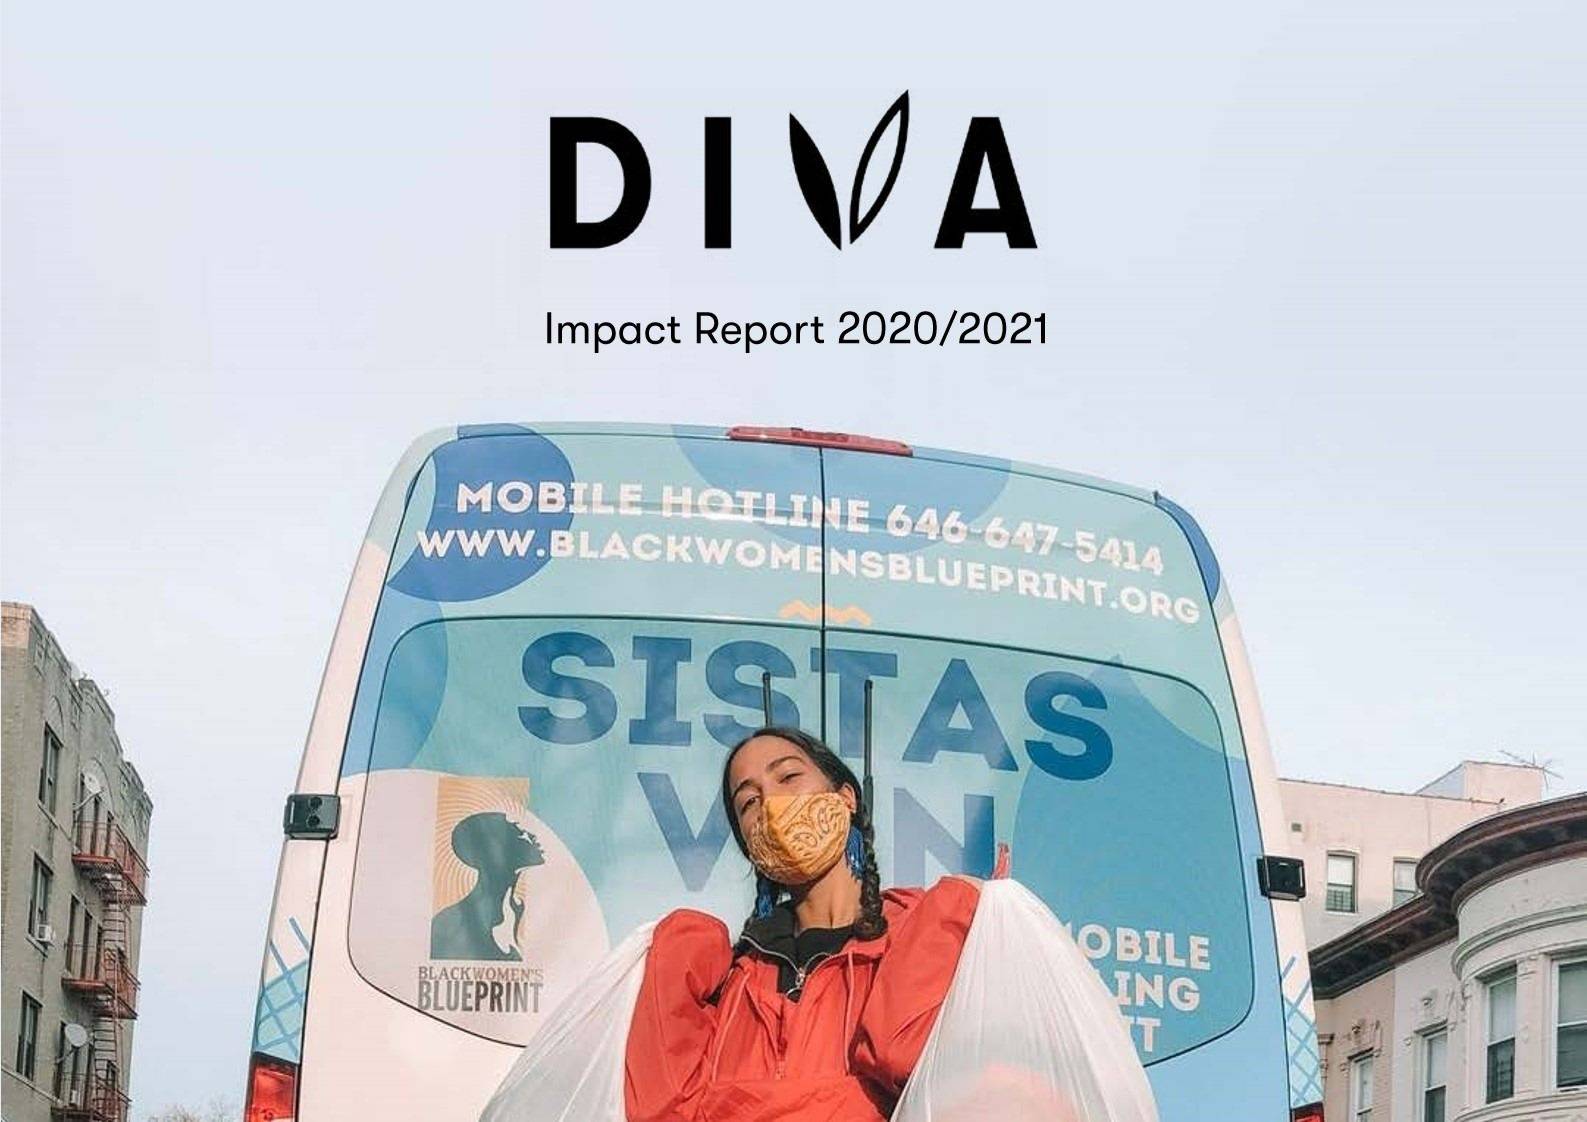 Diva Impact Report 2020/2021